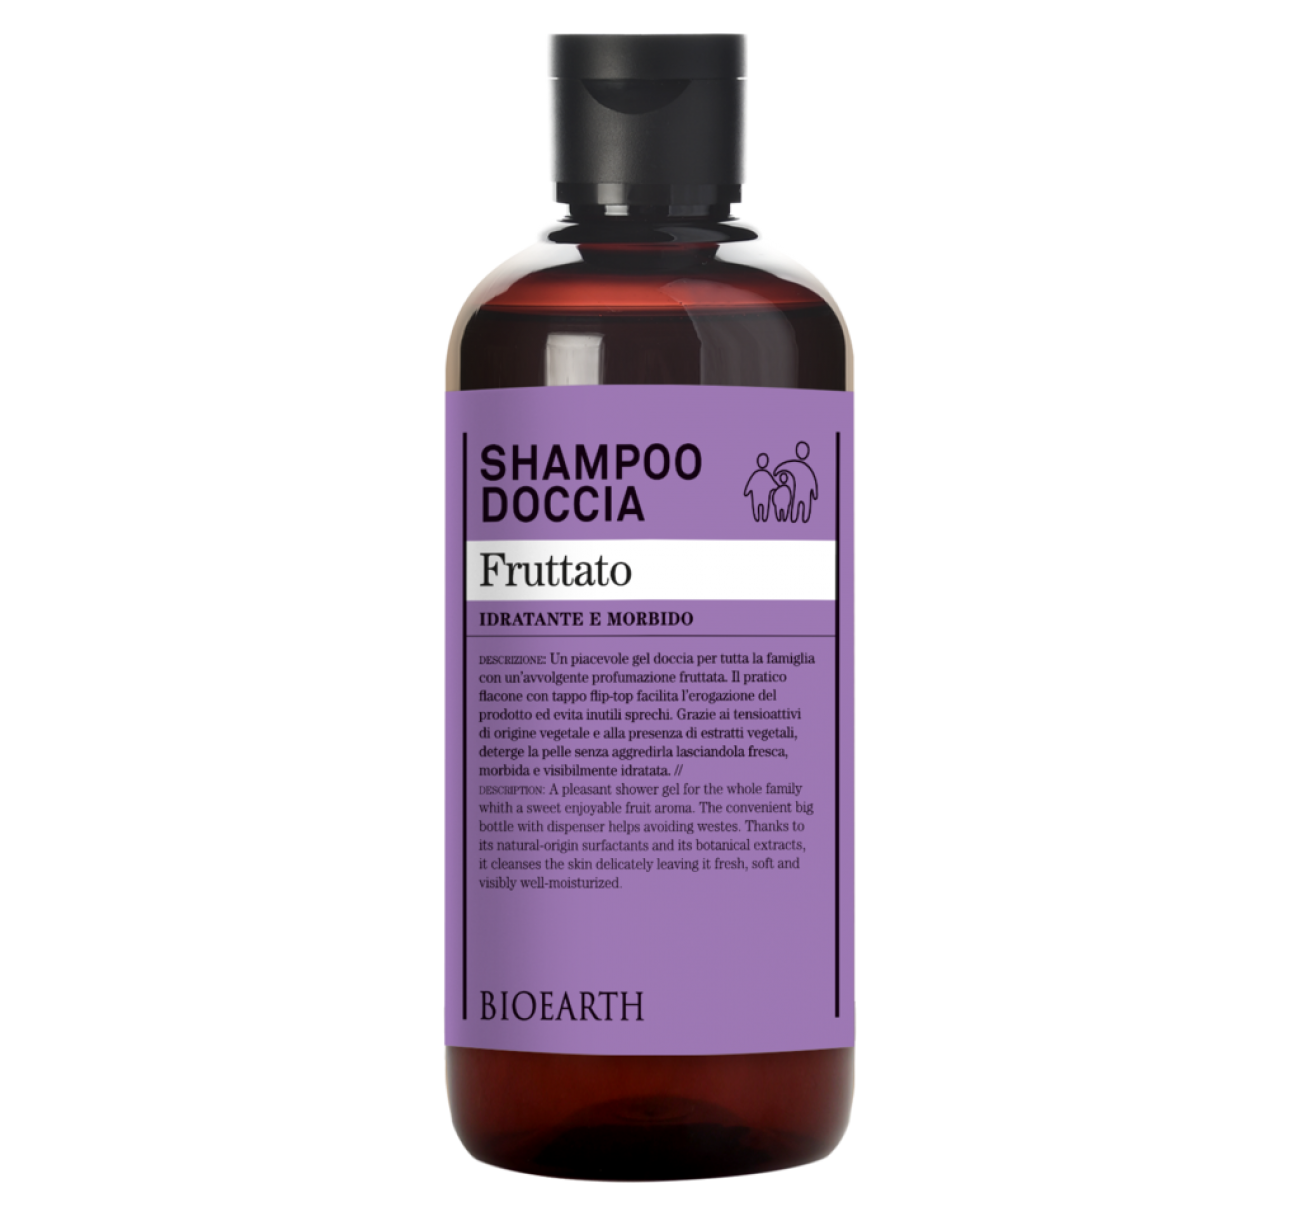 Shampoo Doccia Fruttato 500ml